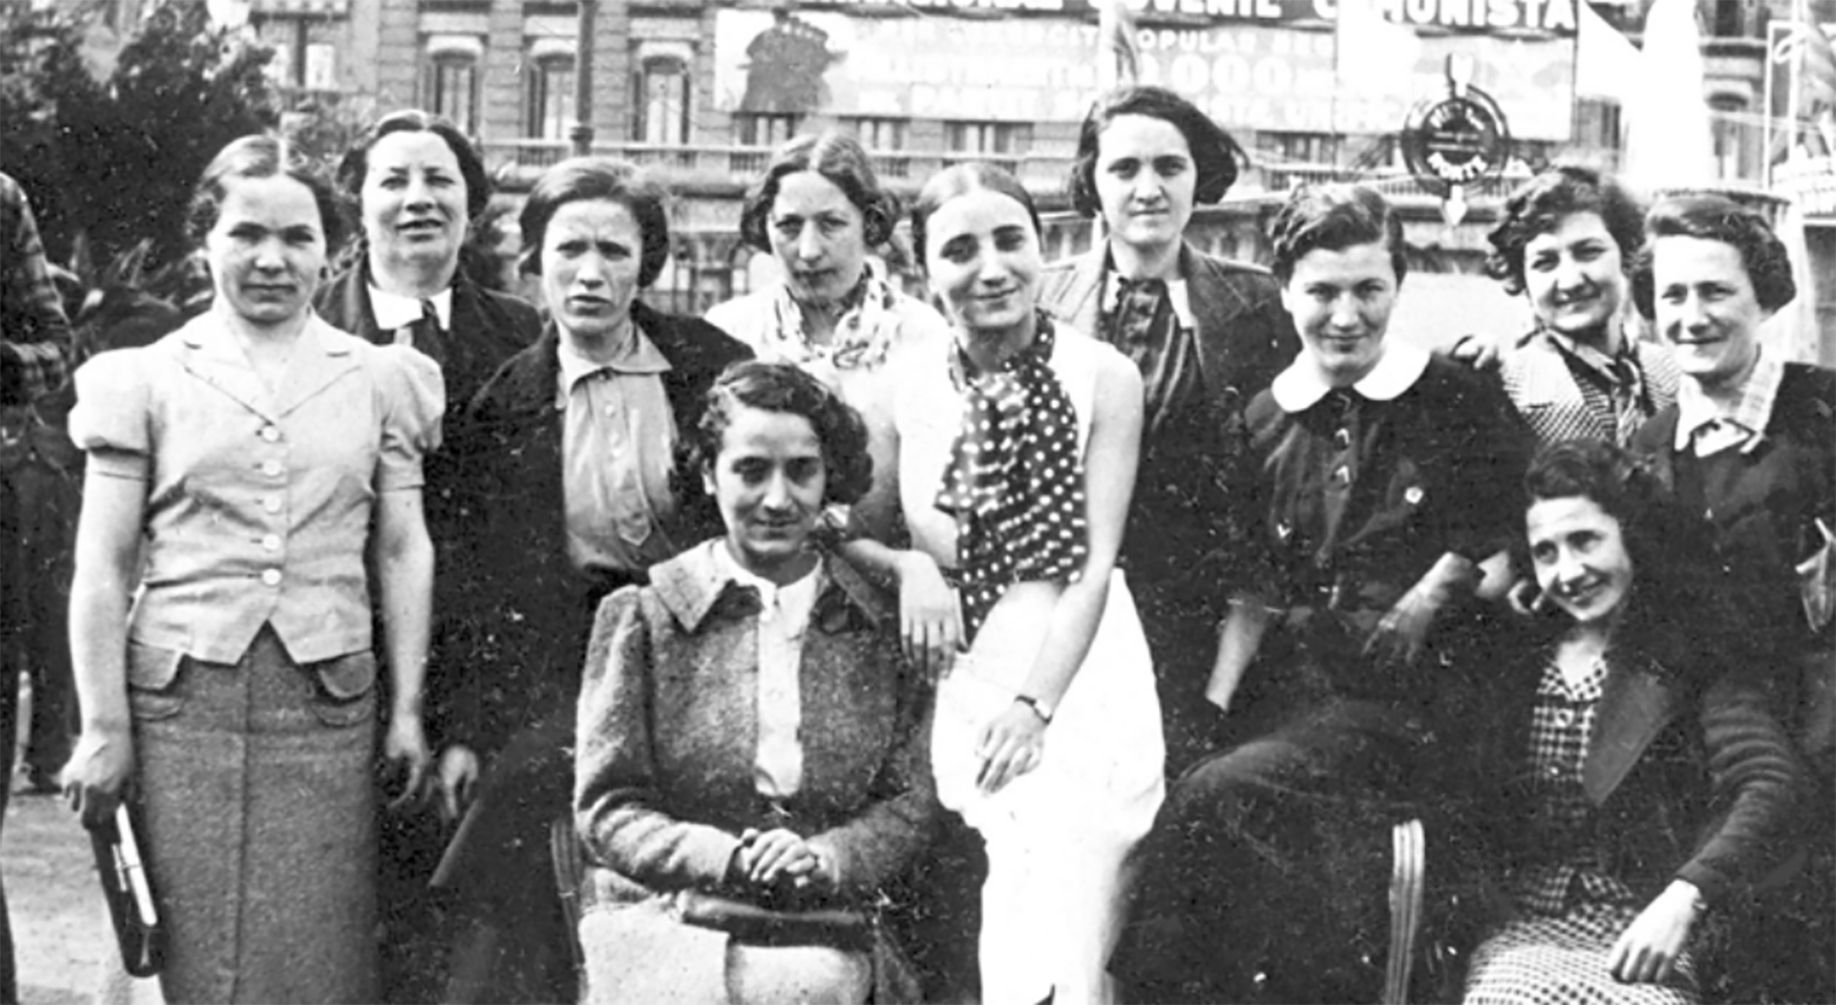 Sale a la luz la historia de 21 enfermeras belgas que lucharon contra Franco y contra Hitler